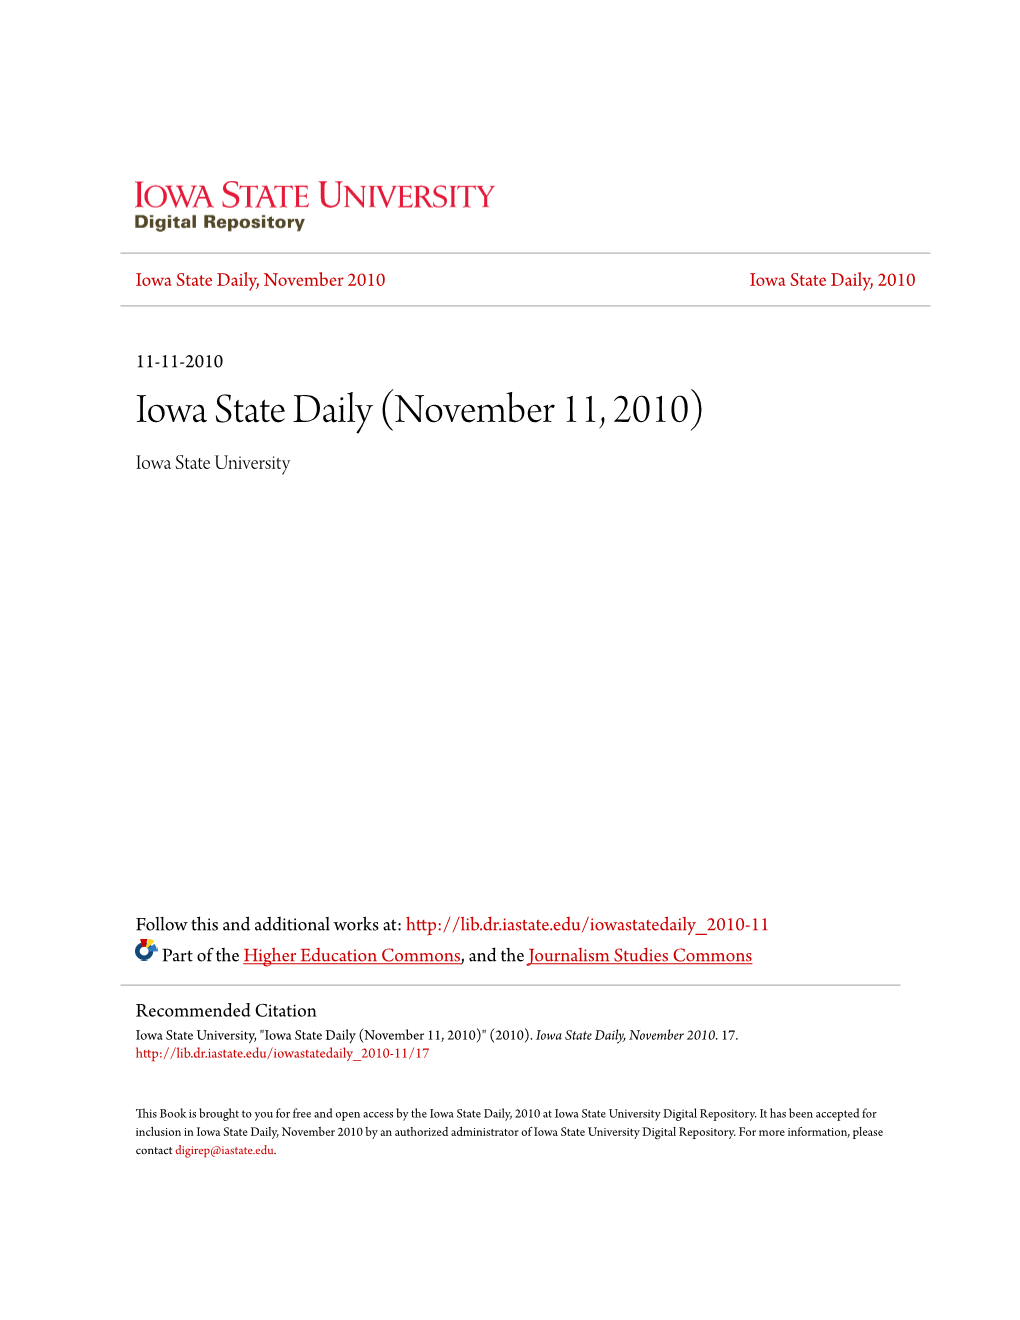 Iowa State Daily (November 11, 2010) Iowa State University